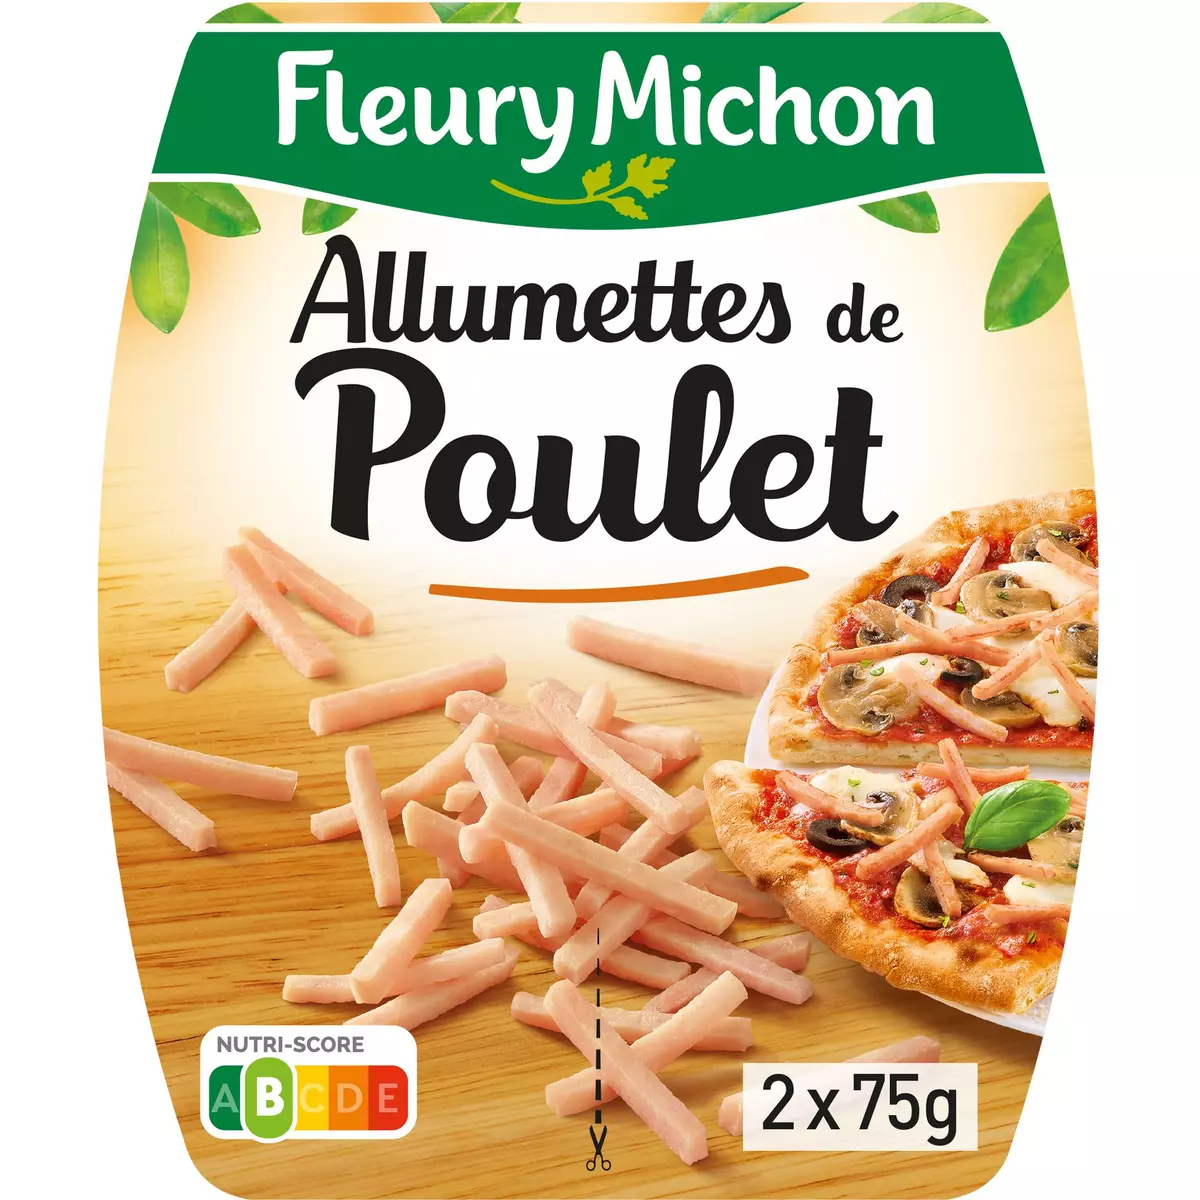 FLEURY MICHON Allumettes de poulet 2x75g